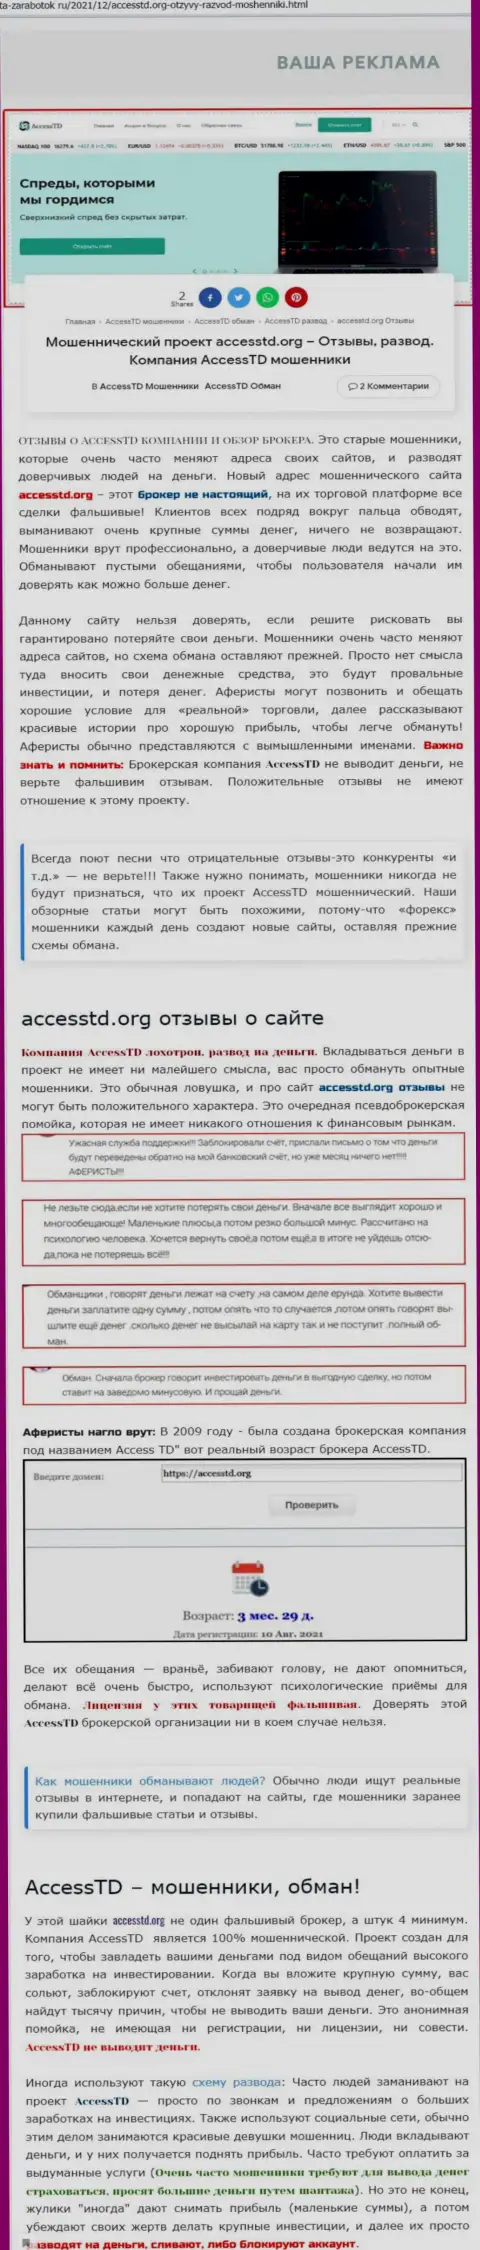 Access TD - это АФЕРИСТЫ !!! Обзор организации и мнения потерпевших